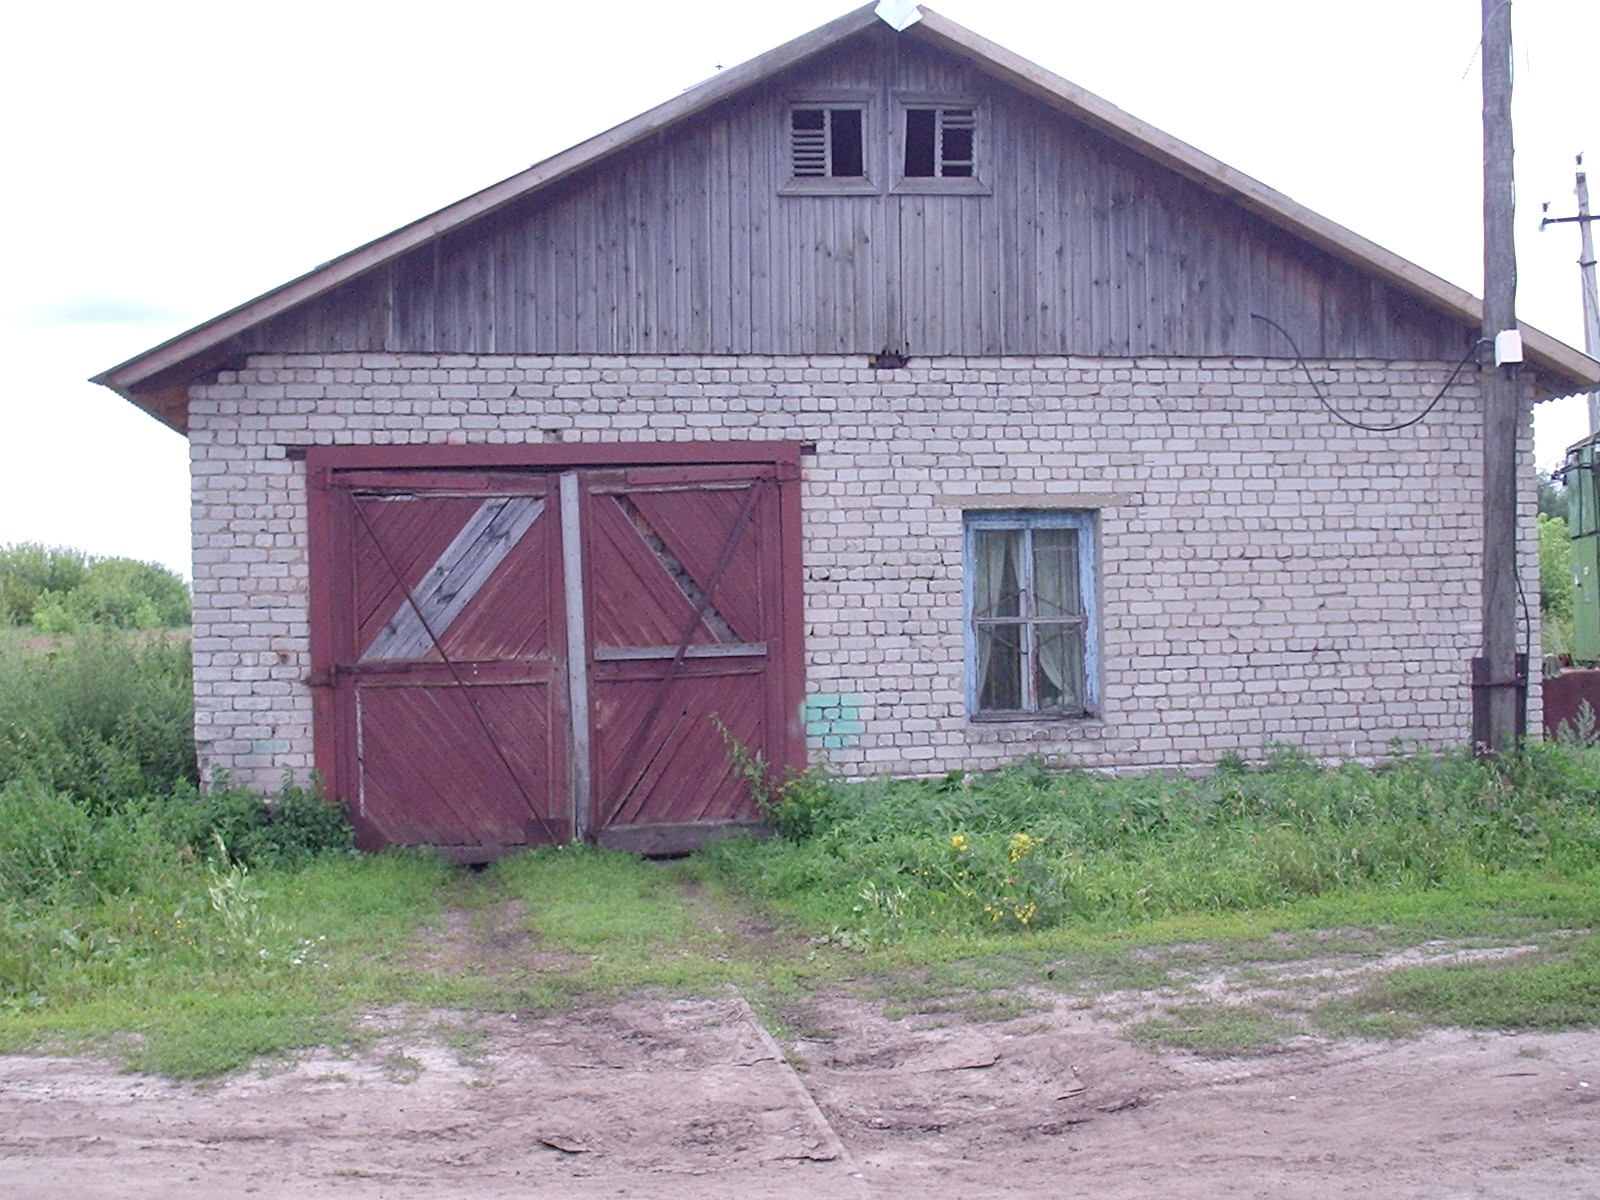 Узкоколейная железная дорога Горьковского предприятия промышленного железнодорожного транспорта - фотографии, сделанные в 2006 году (часть 1)